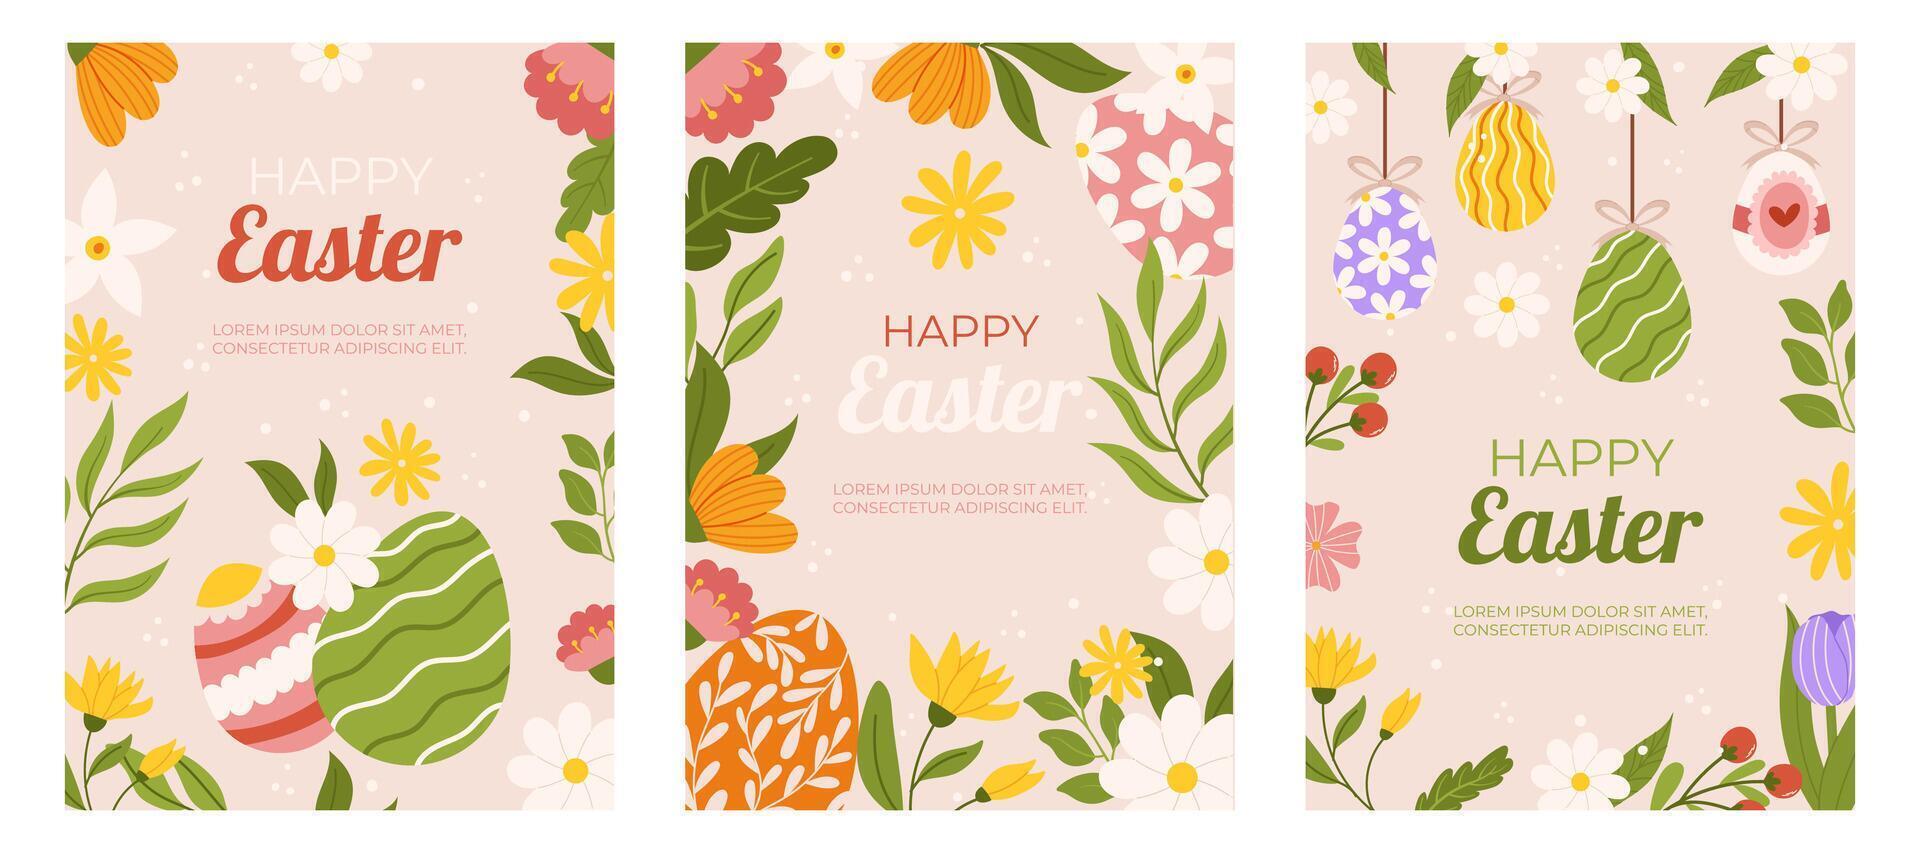 Ostern Sammlung von Vertikale Gruß Karten Vorlage. Design mit Blumen und gemalt Eier hängend auf Schnur. Hand gezeichnet eben Vektor Illustration